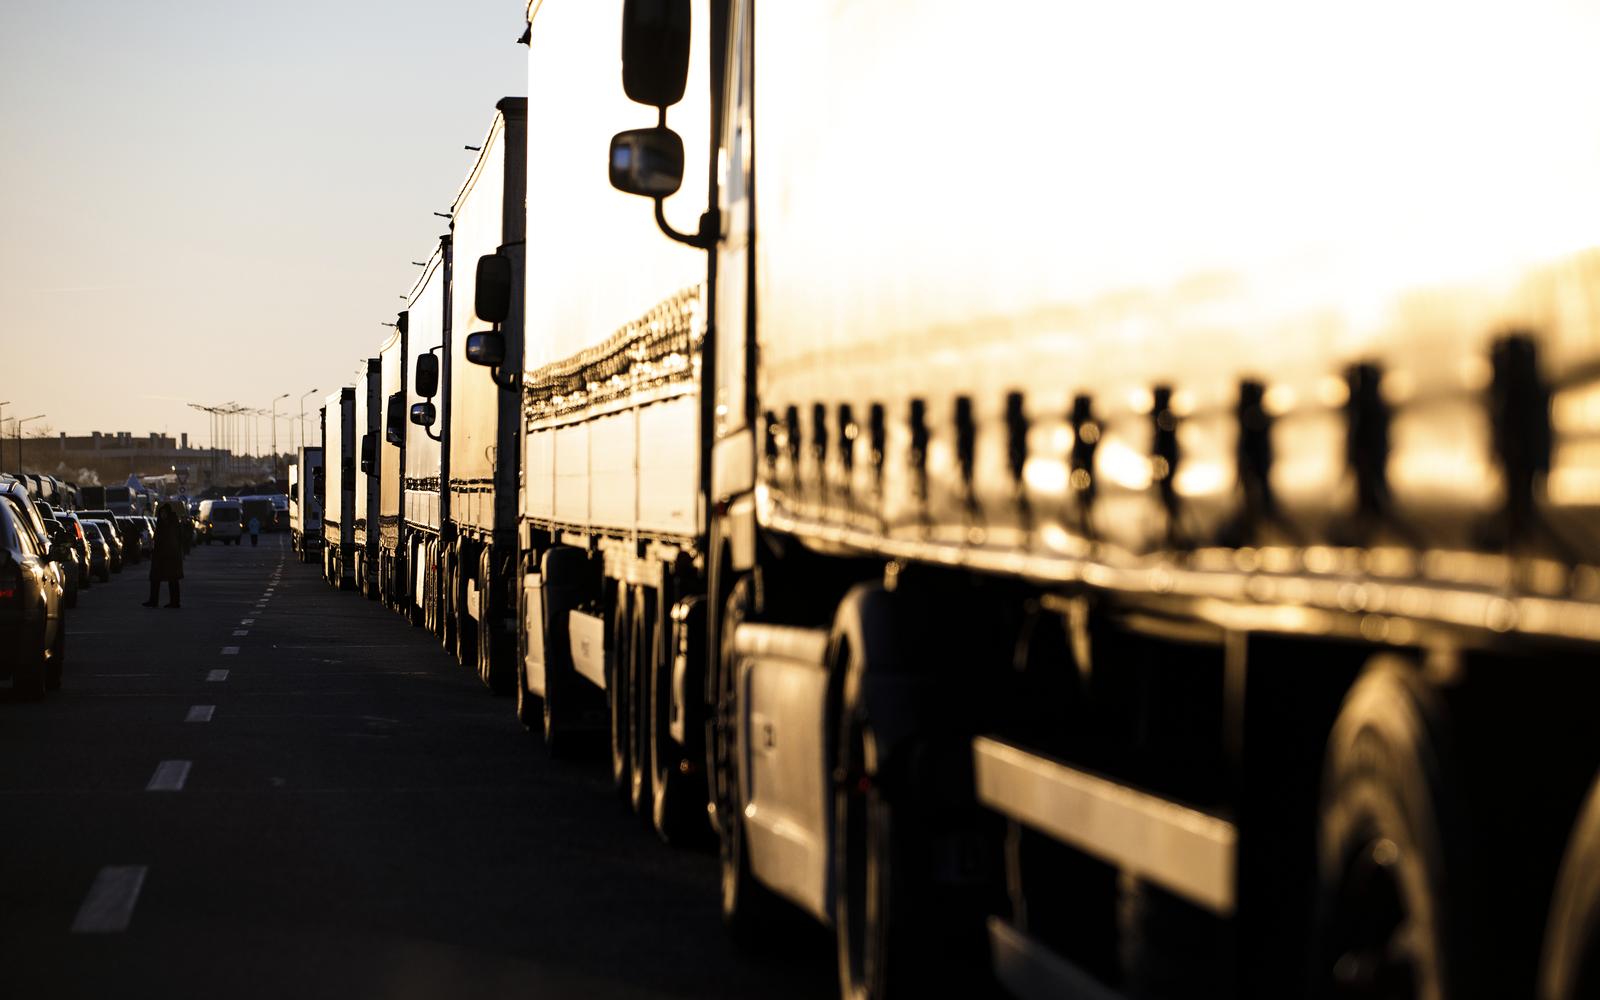 11.03.2022., Krakovets, Ukrajina - Stotine kamiona pod okriljem zadnjih zraka sunca ceka na granicnom prijelazu Korczowa-Krakovets.
  Photo: Milan Sabic/PIXSELL